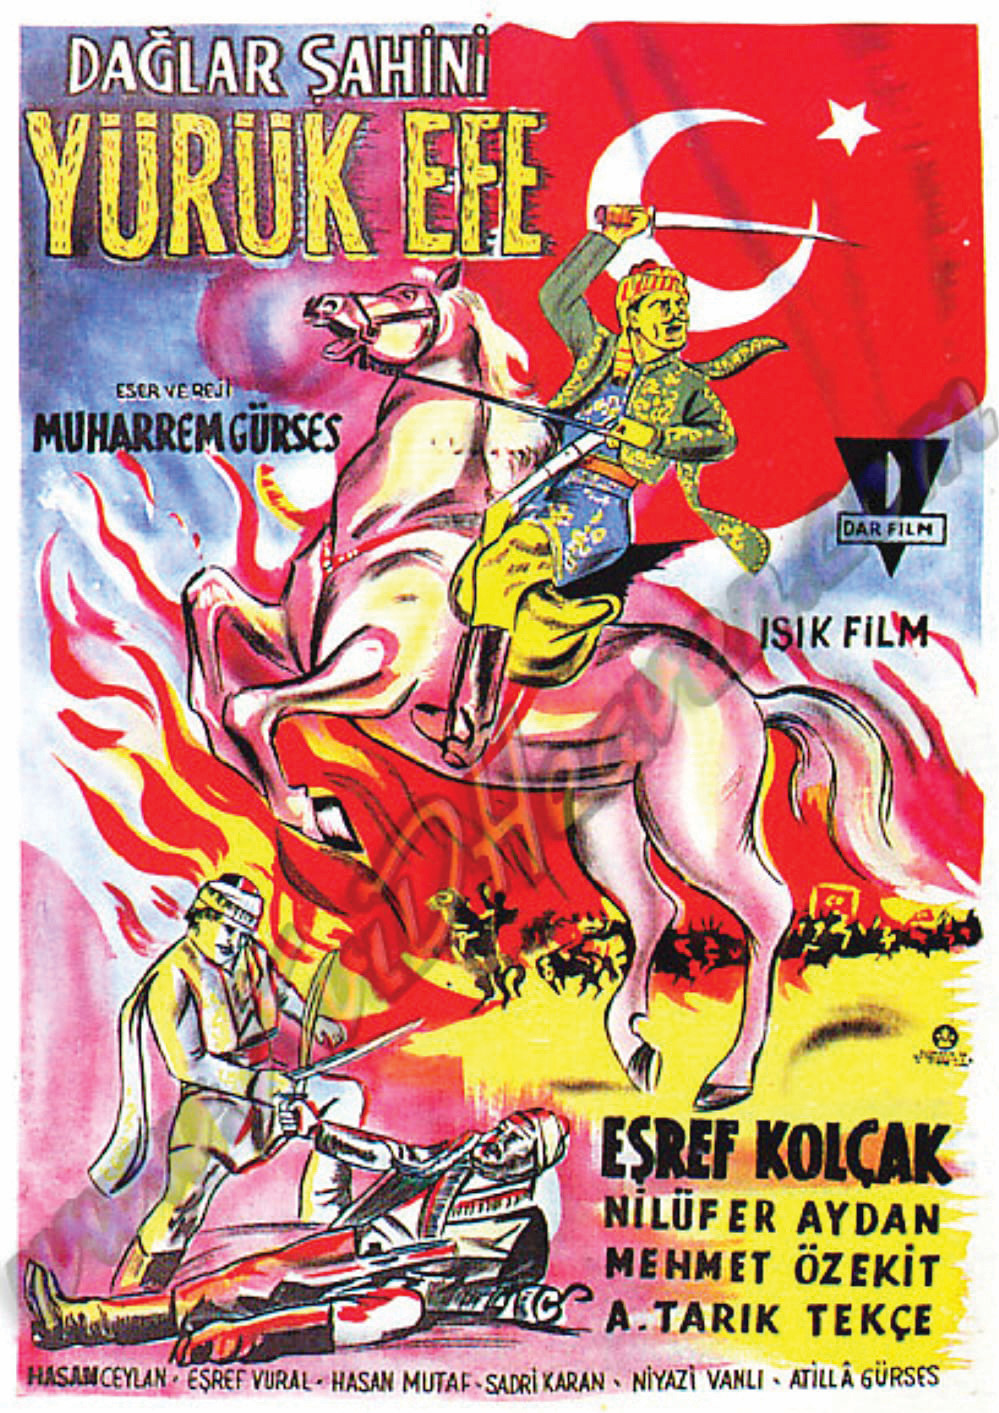 Dağlar Şahini Yürük Efe (1959)